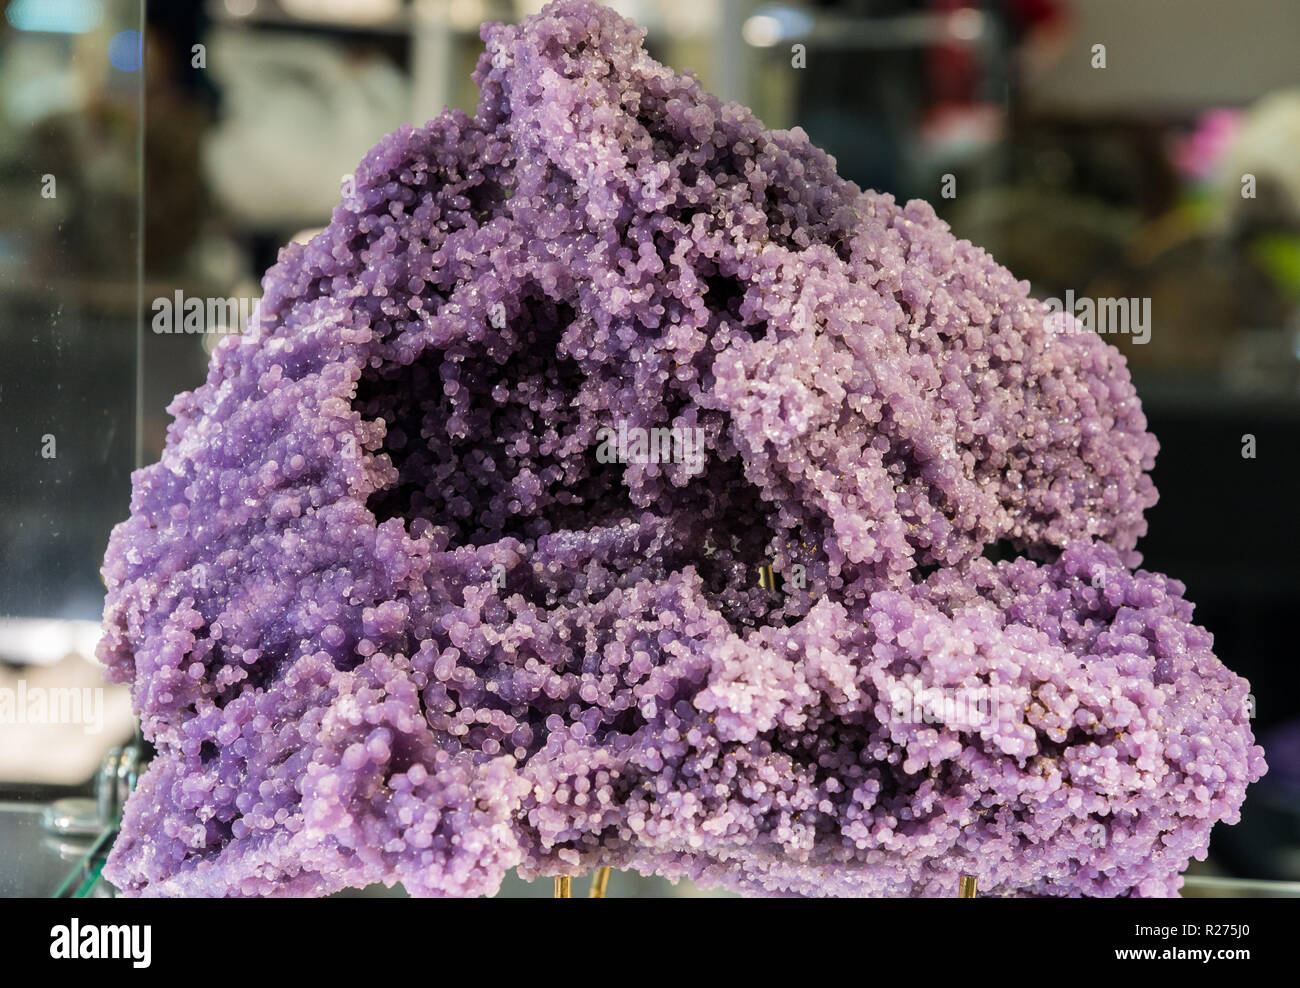 Aggregate of purple silica nodules. Stock Photo